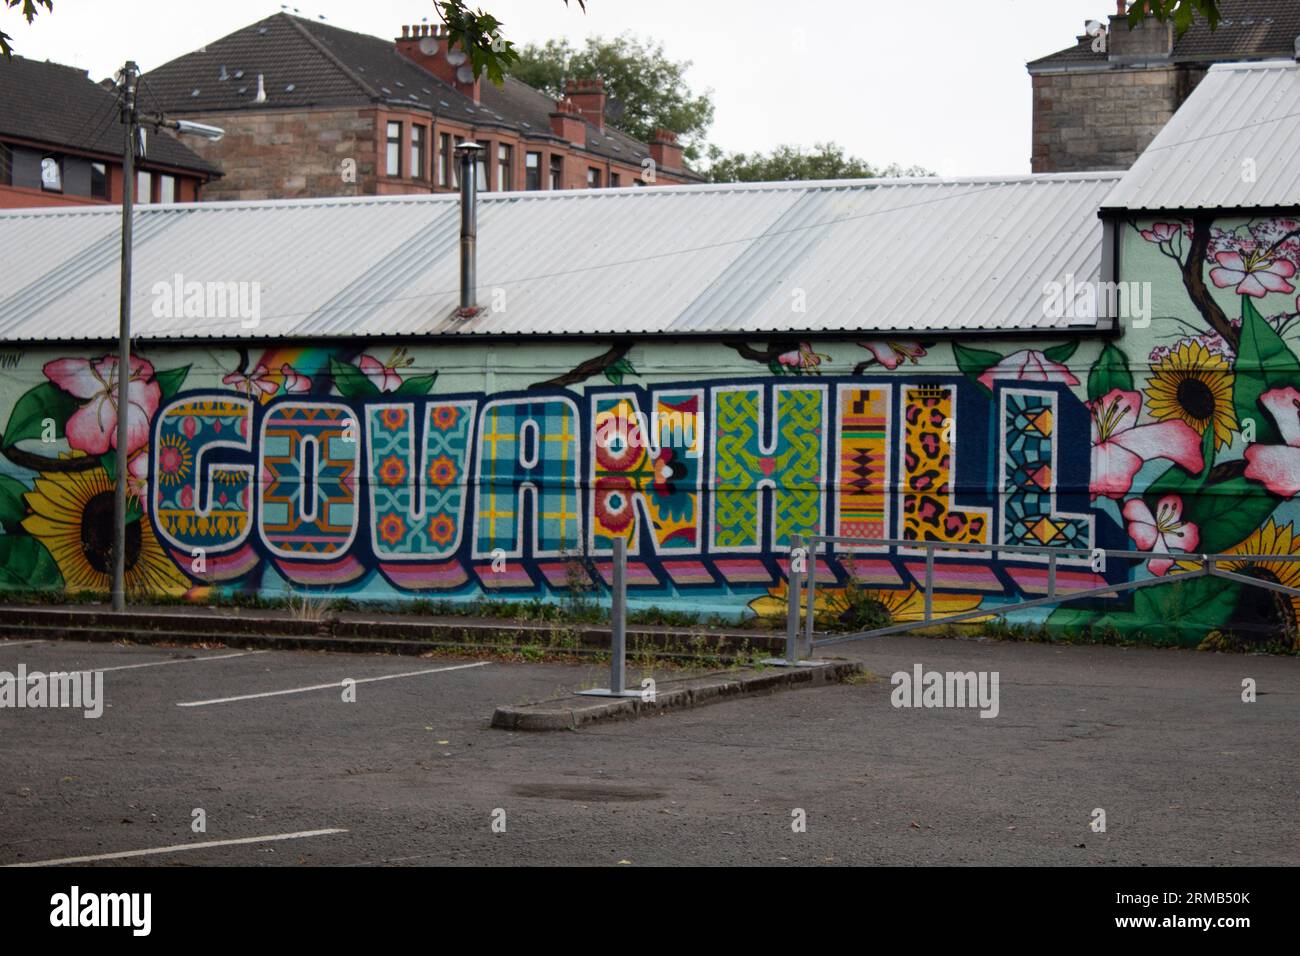 Le nom du quartier résidentiel Govanhill de Glasgow, graffiti sur un mur de l'Écosse Banque D'Images